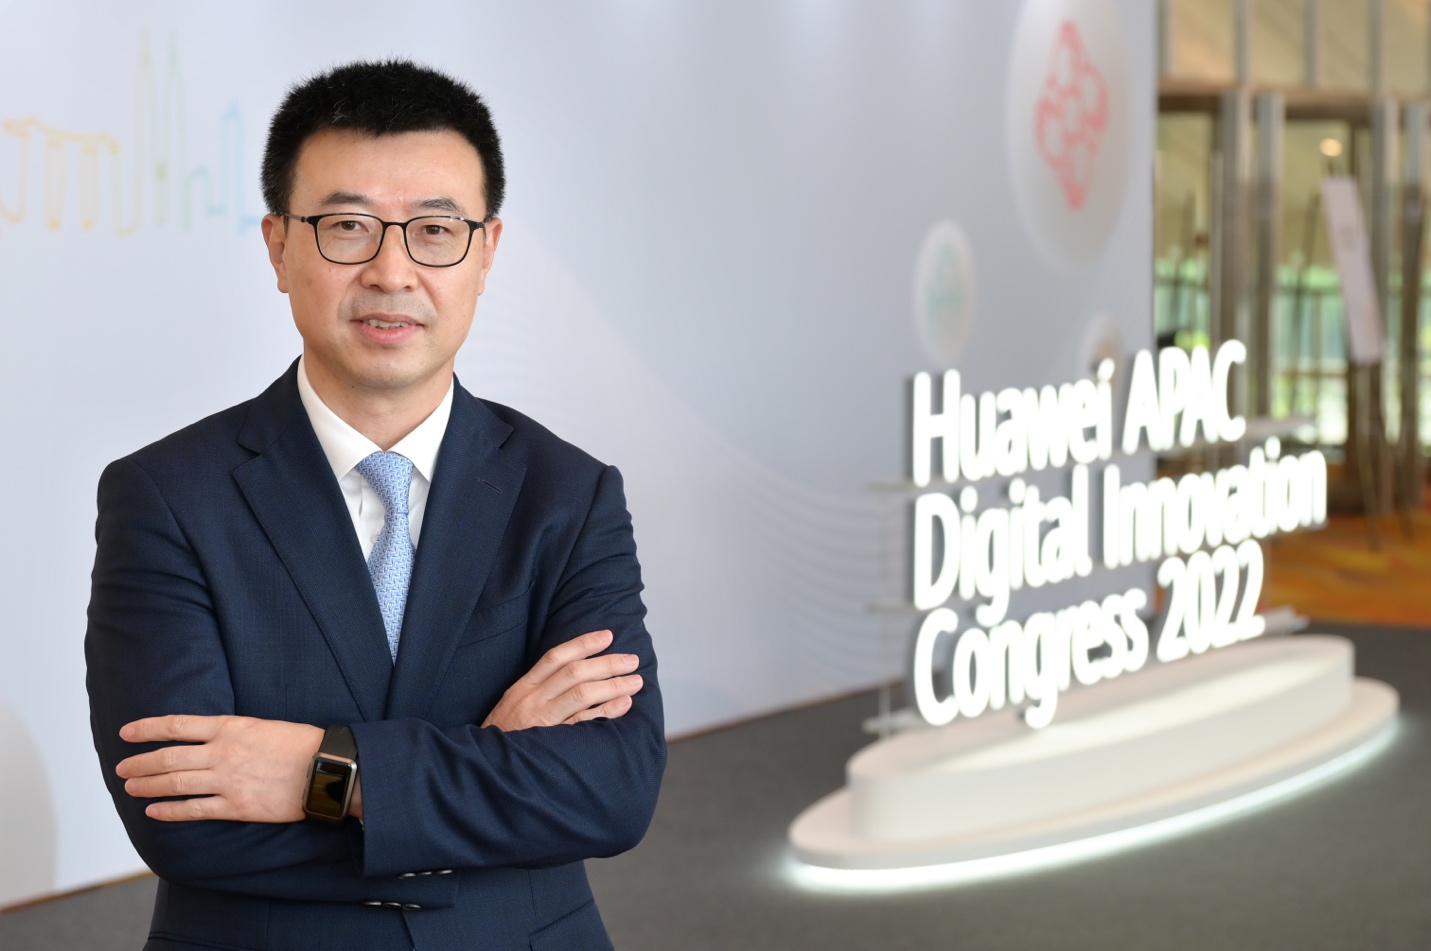 Huawei trao quyền cho Châu Á Thái Bình Dương để đi trước trong nền kinh tế số